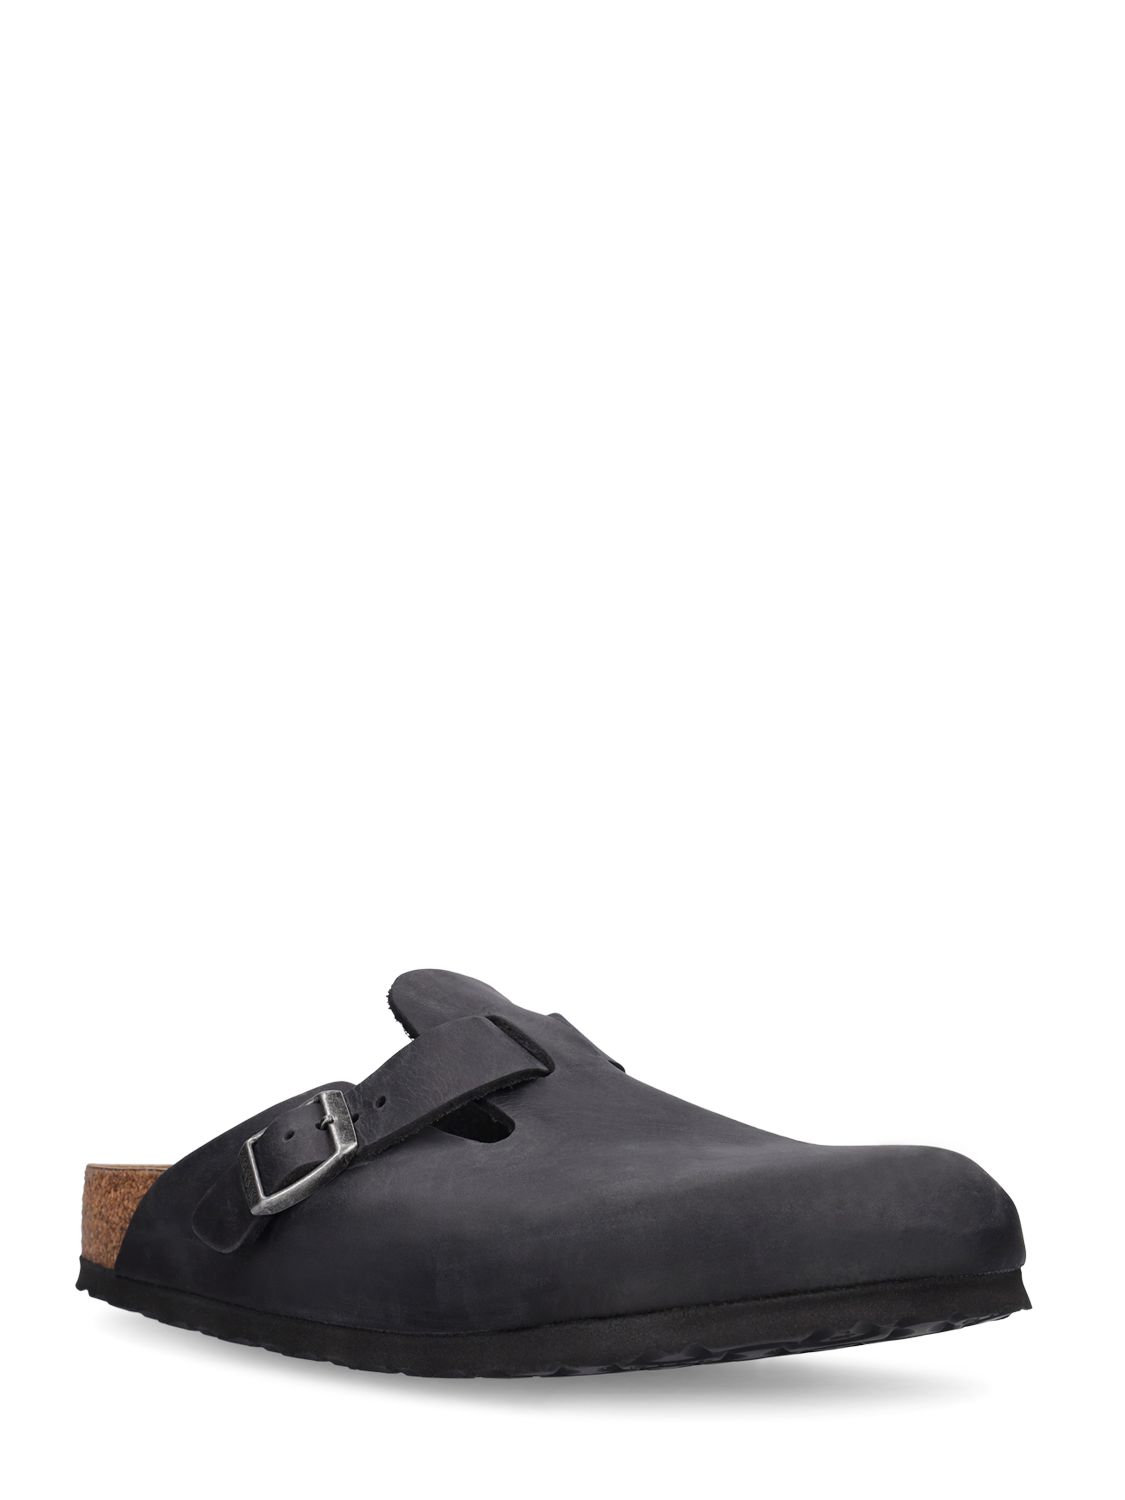 Shop Birkenstock Boston Waxy Leather Sandals In Black